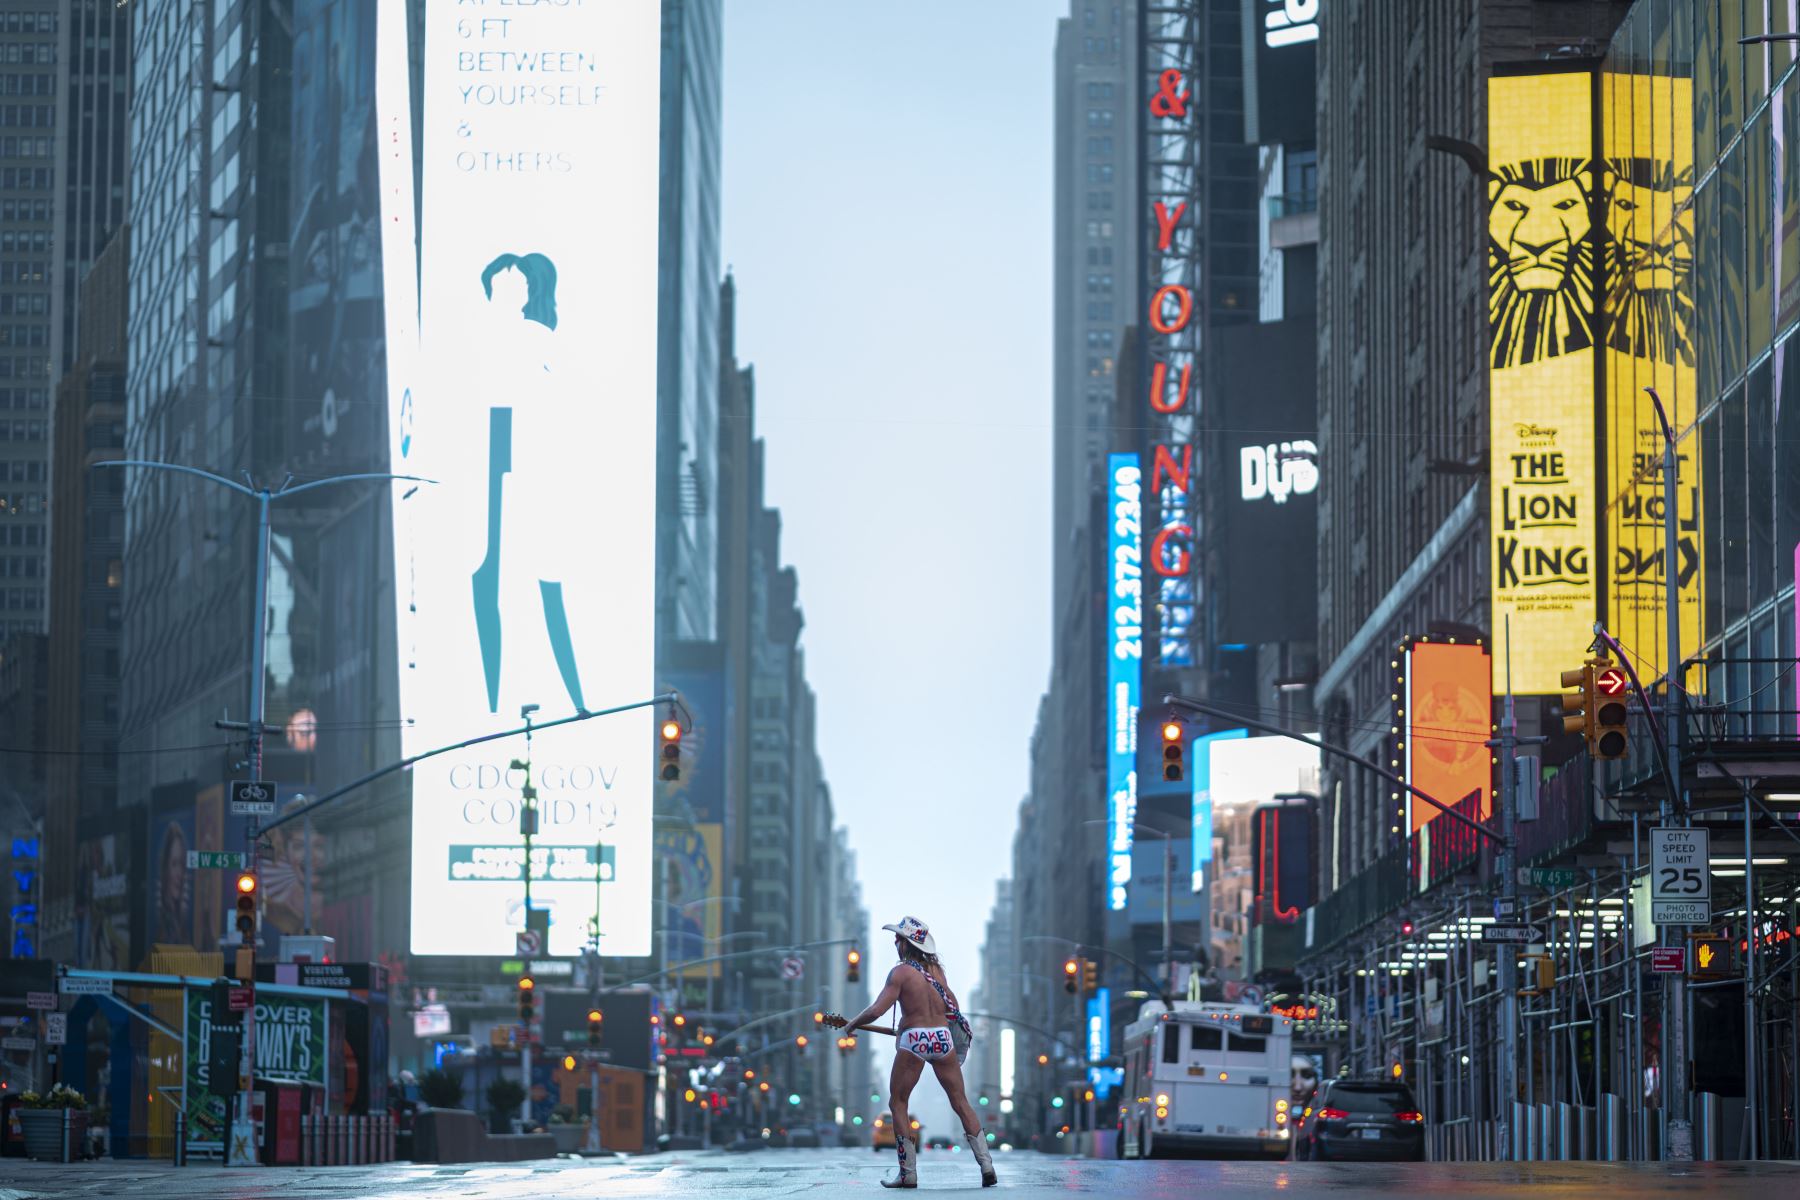 El artista callejero Robert John Burck, conocido como The Naked Cowboy, toca la guitarra en medio de la preocupación por el coronavirus en el casi desierto Times Square de Nueva York. Foto: AFP